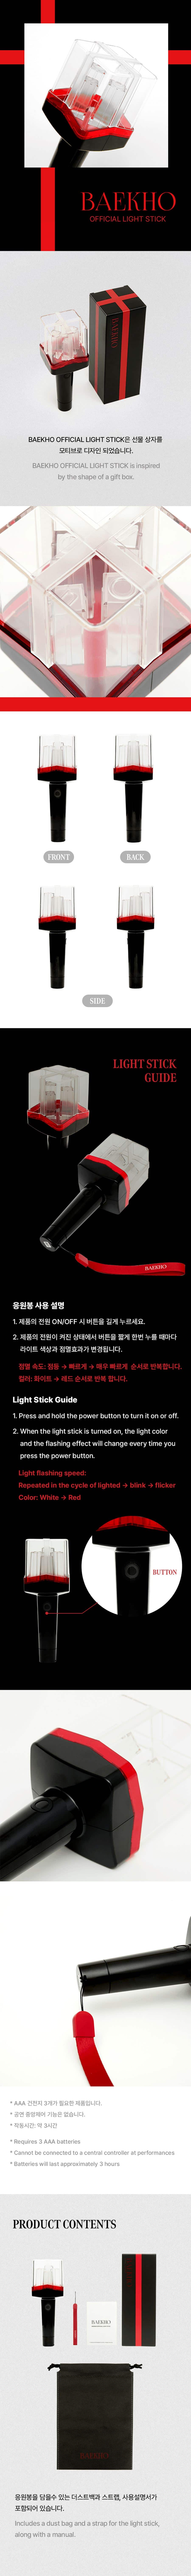 baekho-kang-dong-ho-official-light-stick-wholesales